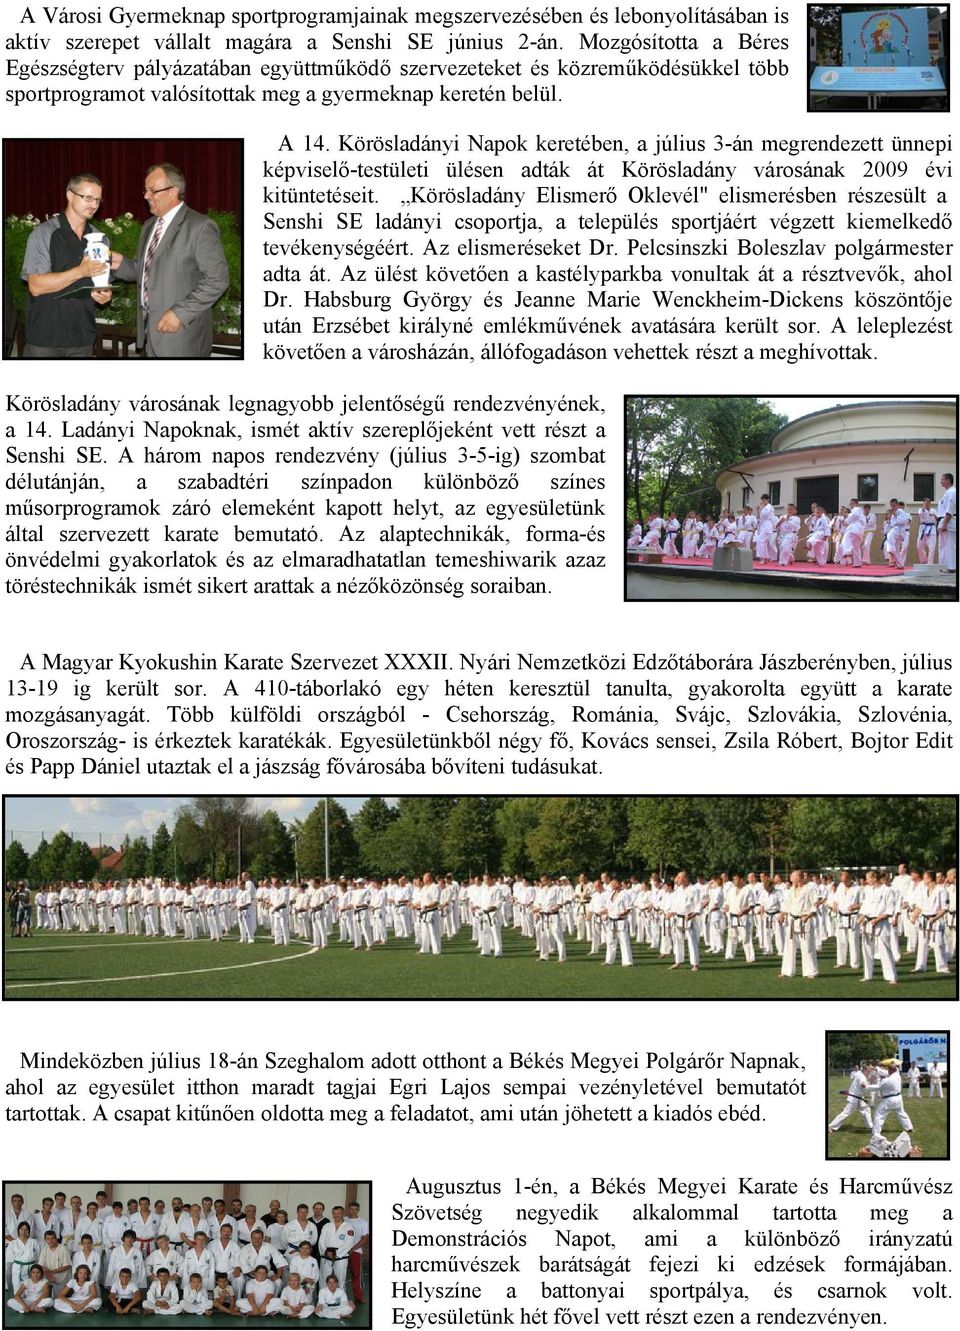 Körösladányi Napok keretében, a július 3-án megrendezett ünnepi képviselő-testületi ülésen adták át Körösladány városának 2009 évi kitüntetéseit.